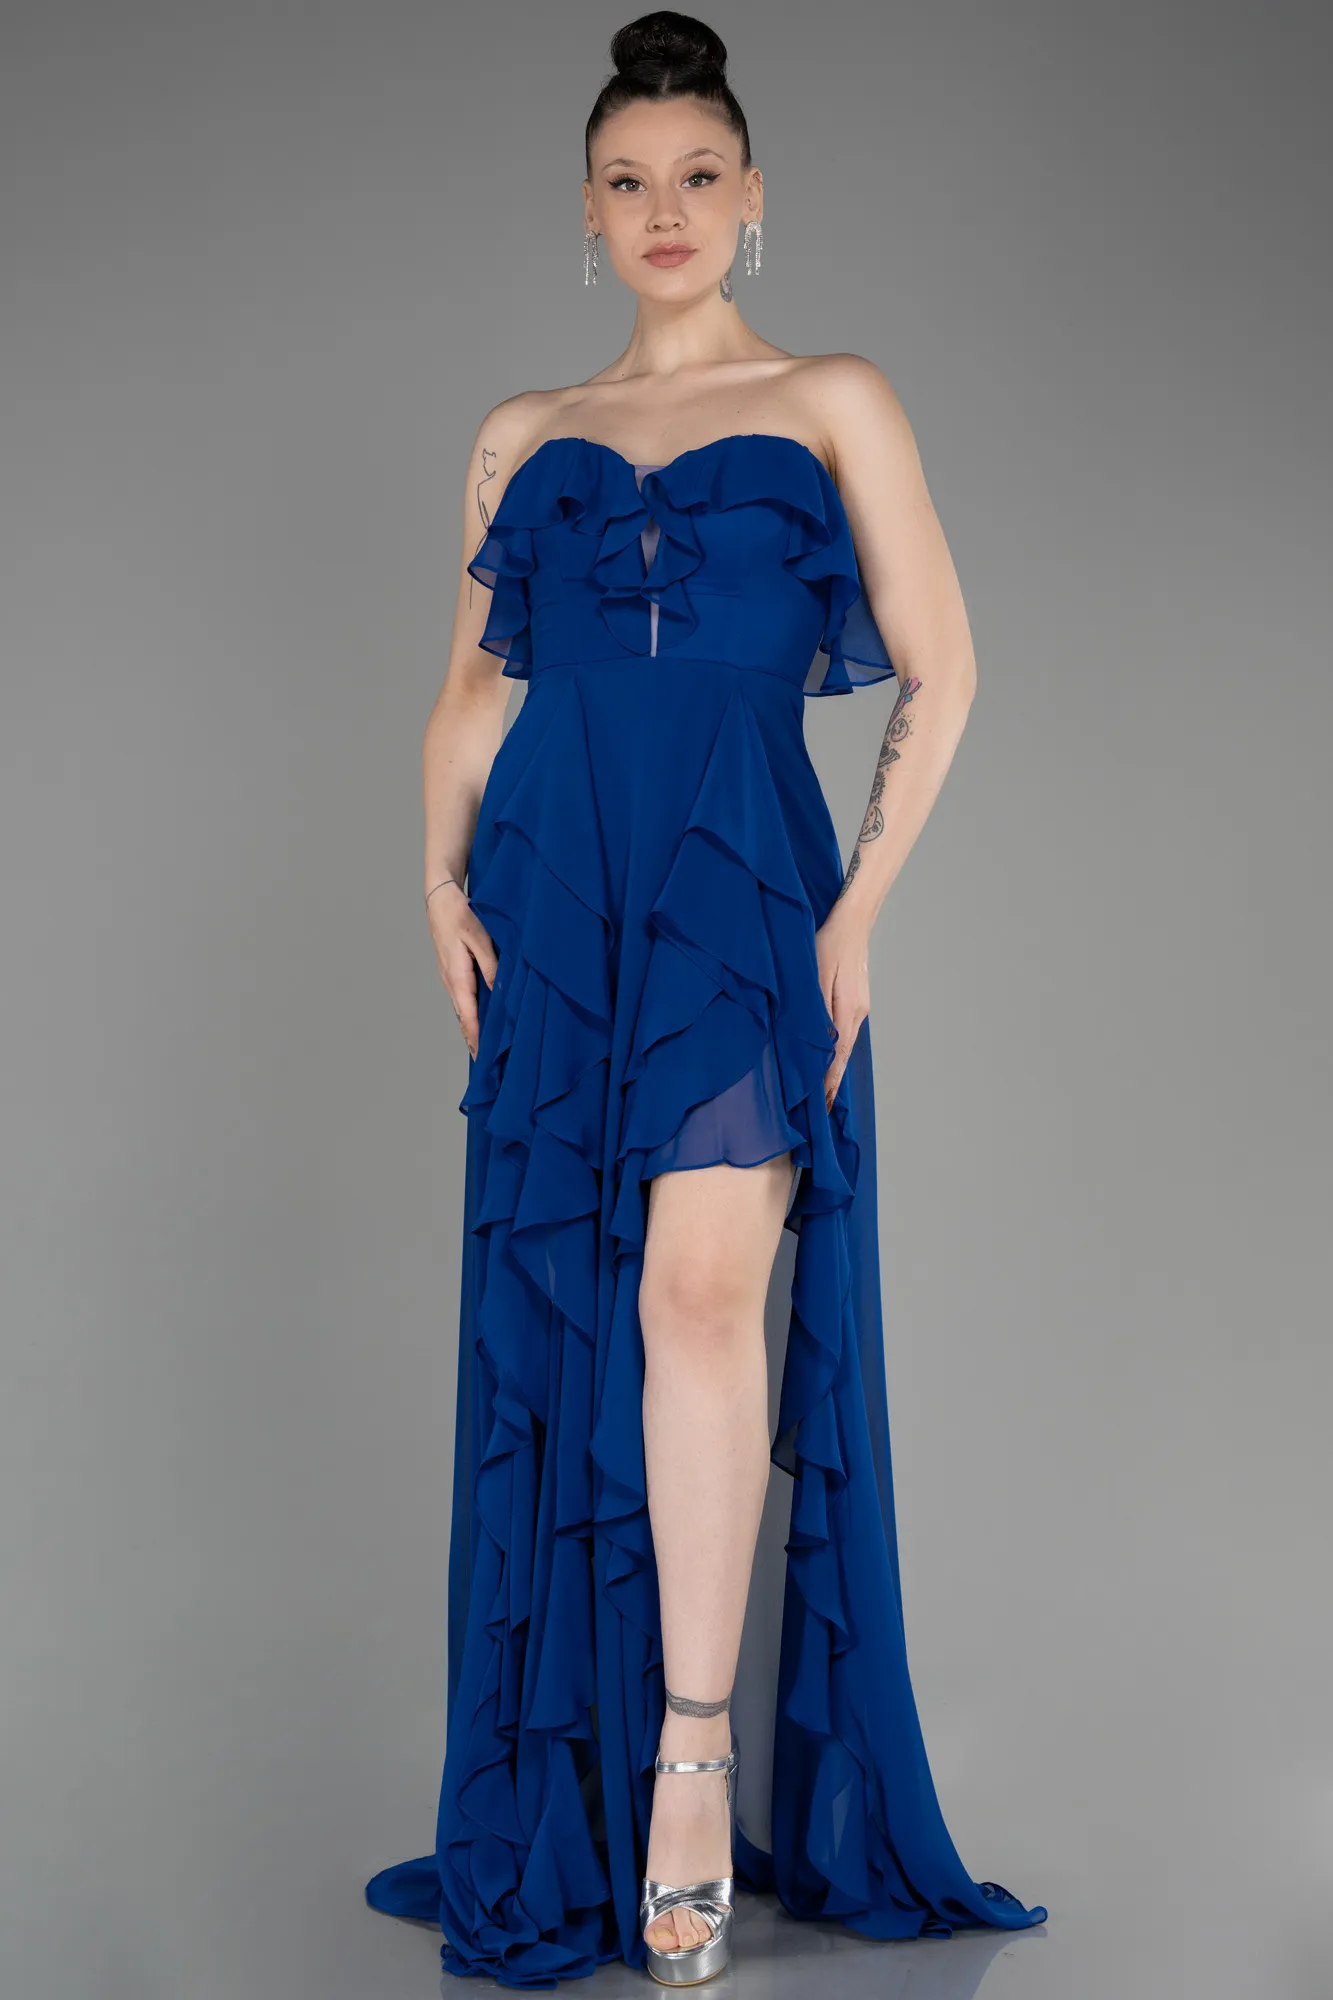 Sax Blue-Strapless Long Chiffon Prom Dress ABU3838